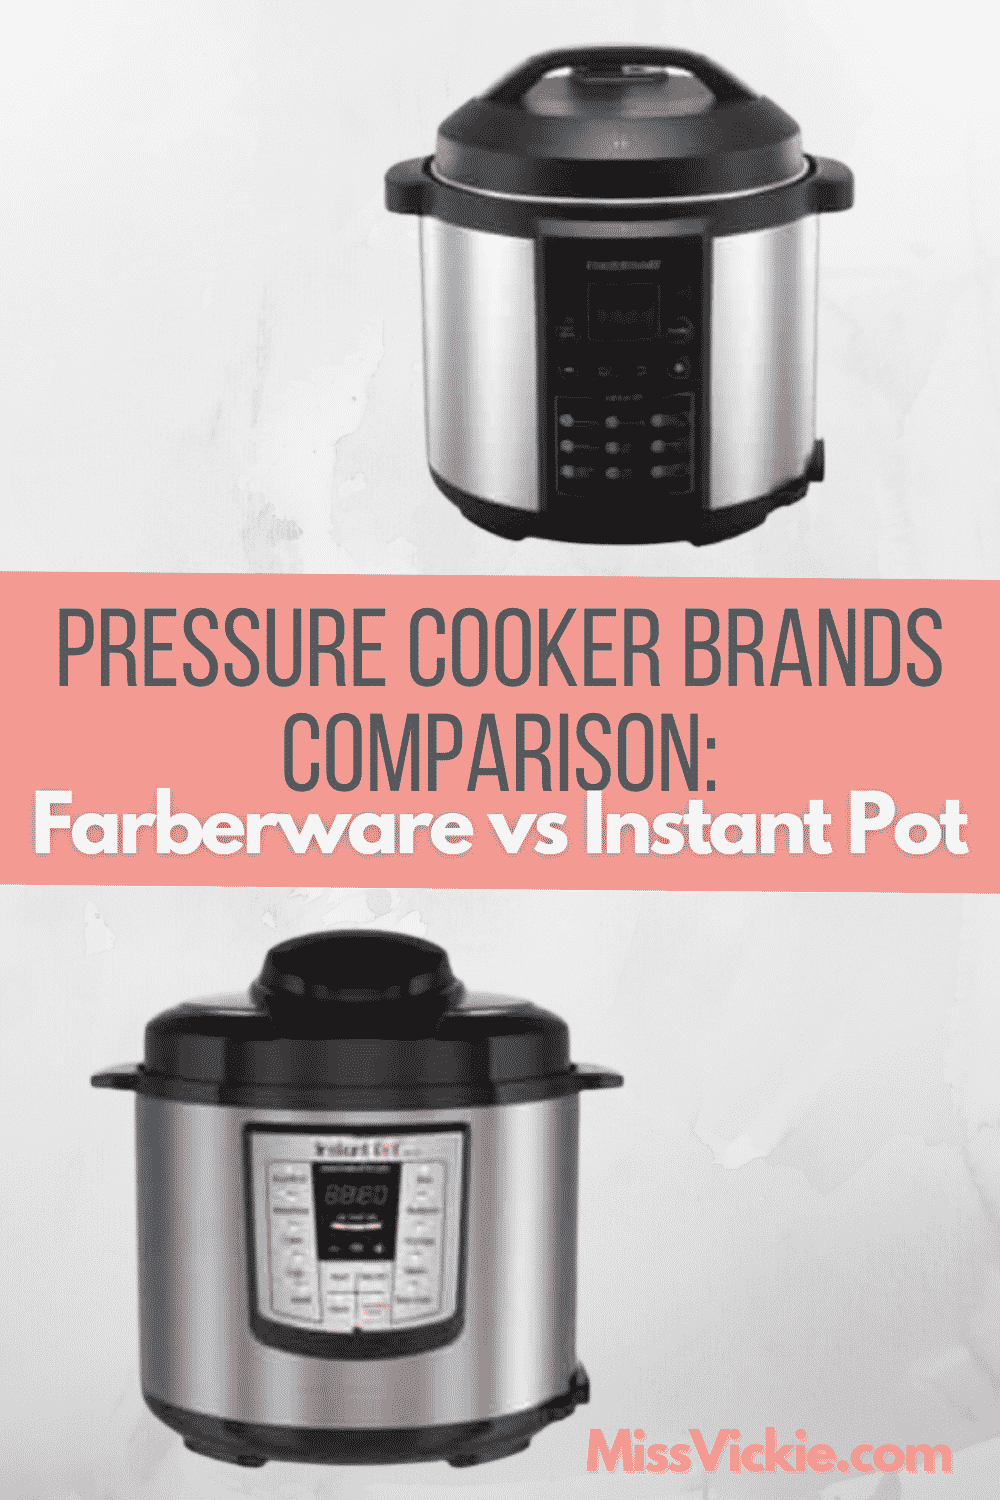 Compare Farberware Pressure Cooker vs Instant Pot